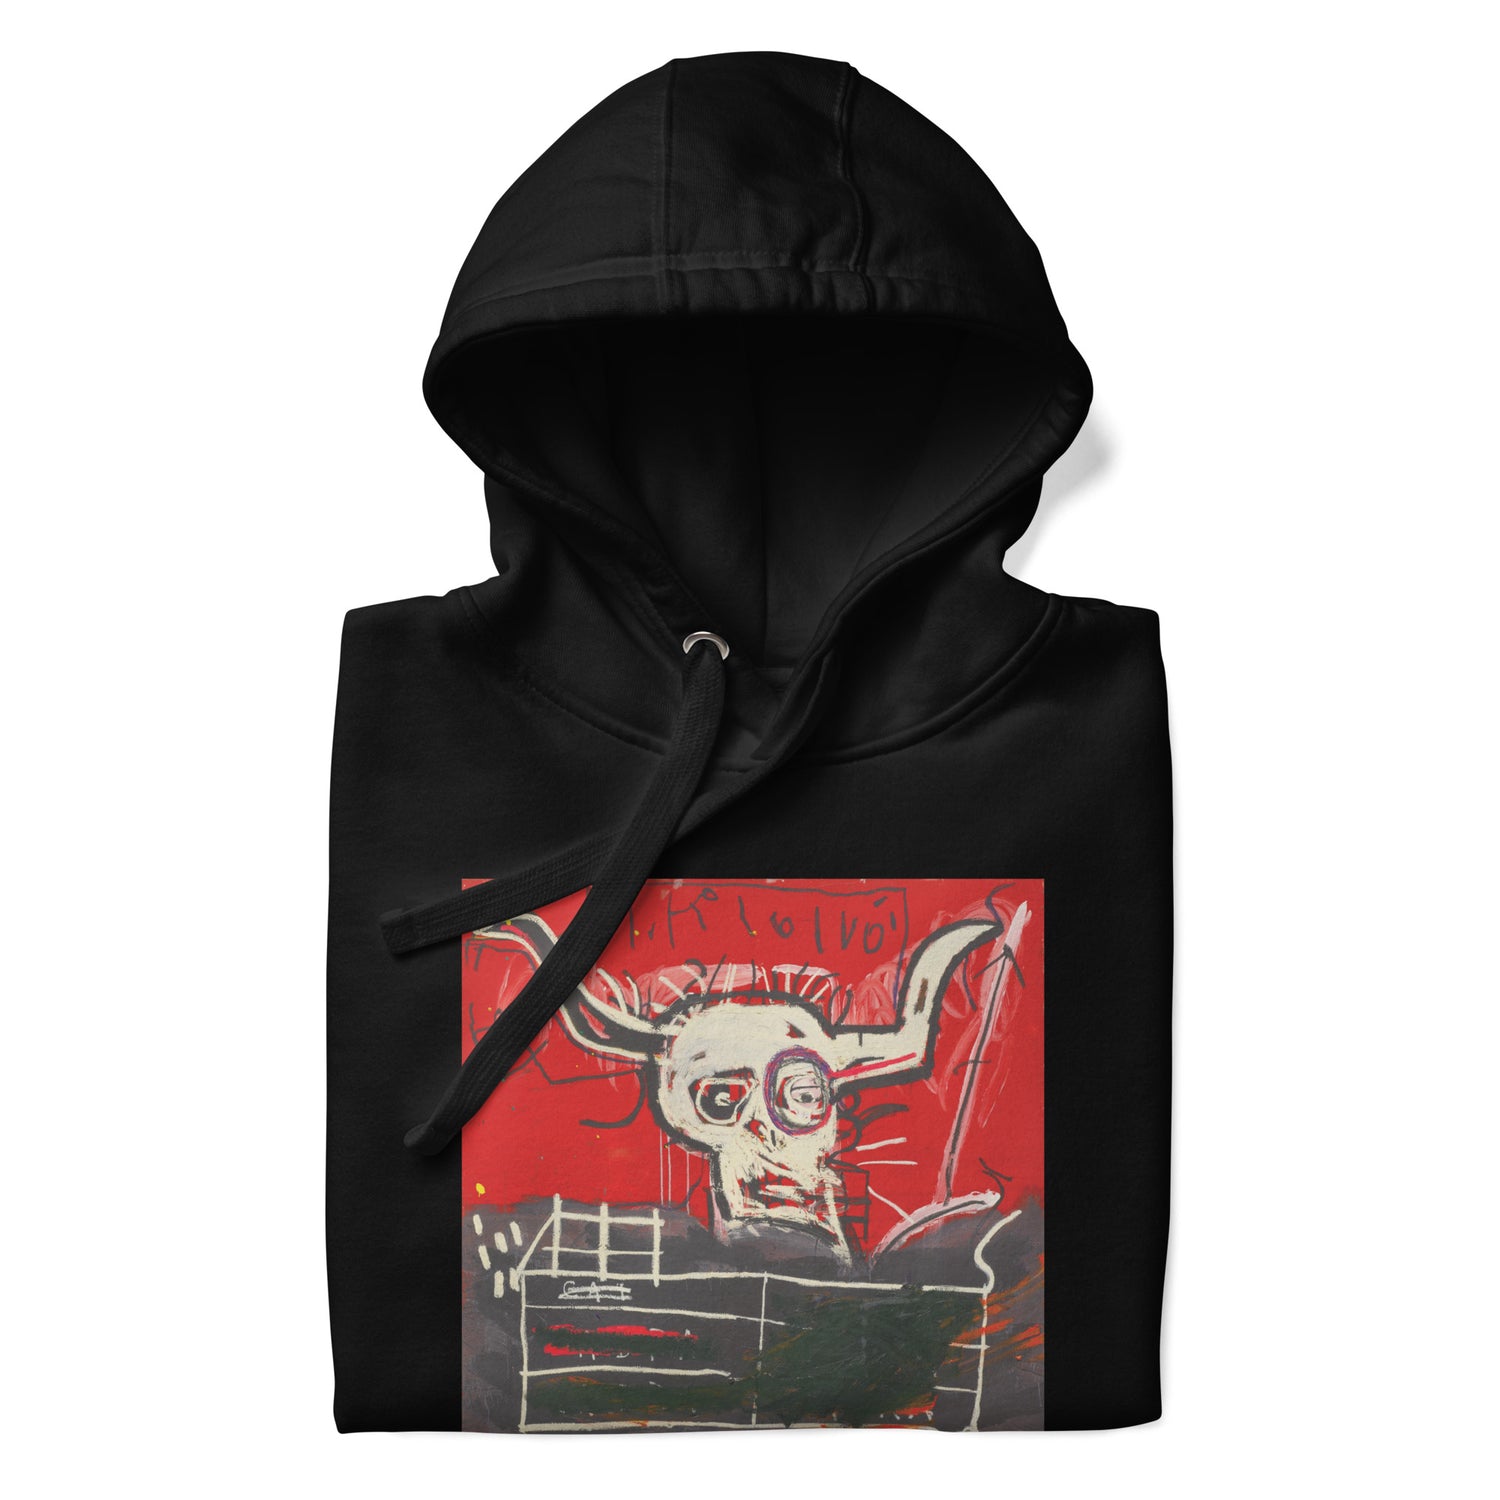 Jean-Michel Basquiat "Cabra" Artwork Printed Premium Streetwear Sweatshirt Hoodie Black